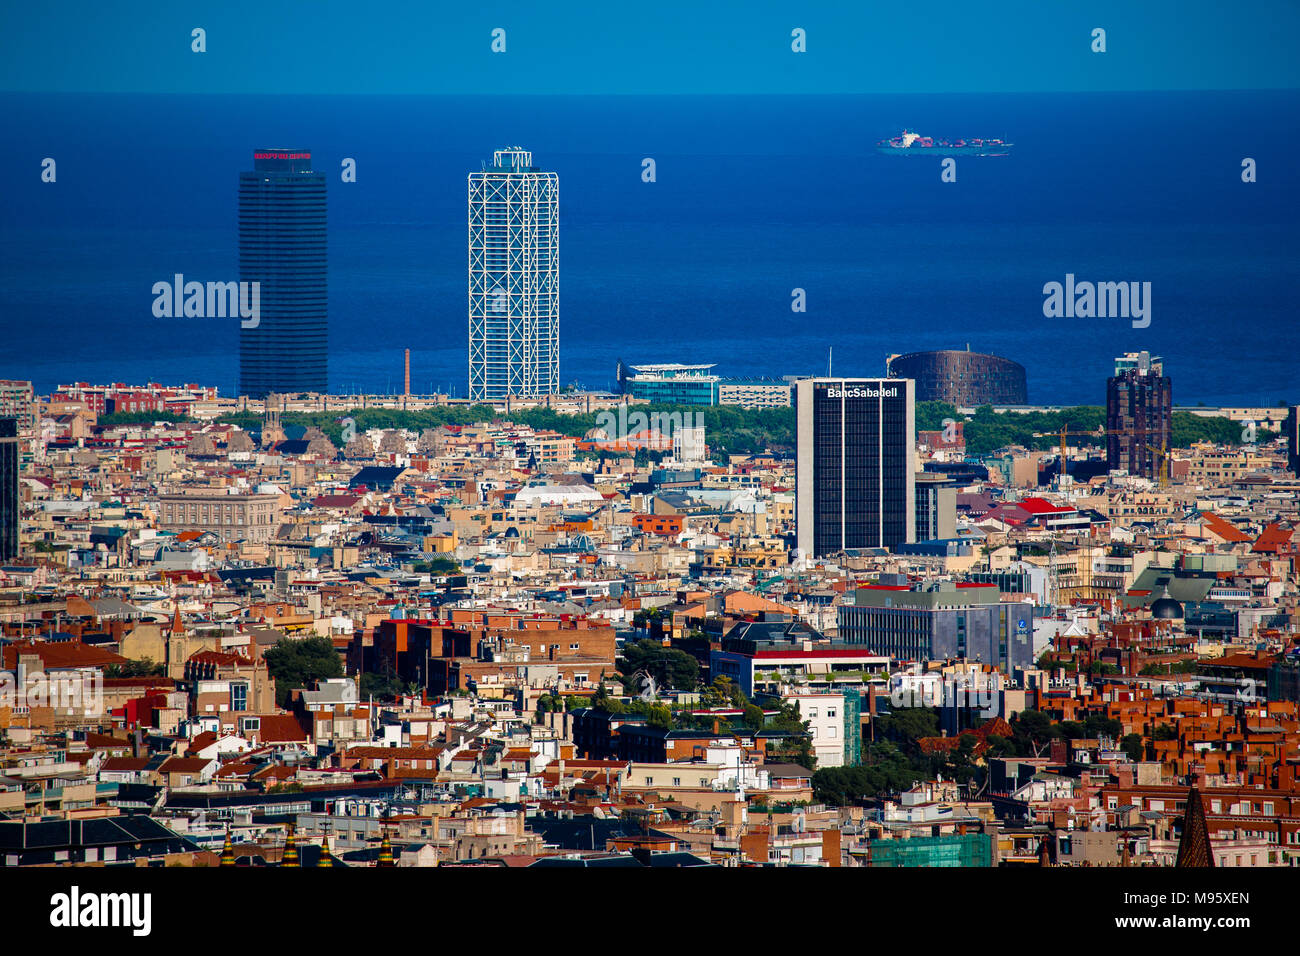 Une vue à longue distance de Barcelone, avec ses célèbres tours jumelles de Mapfre et l'hôtel Arts poussé jusqu'à l'encontre de la mer Méditerranée, Barcelone, Espagne Banque D'Images